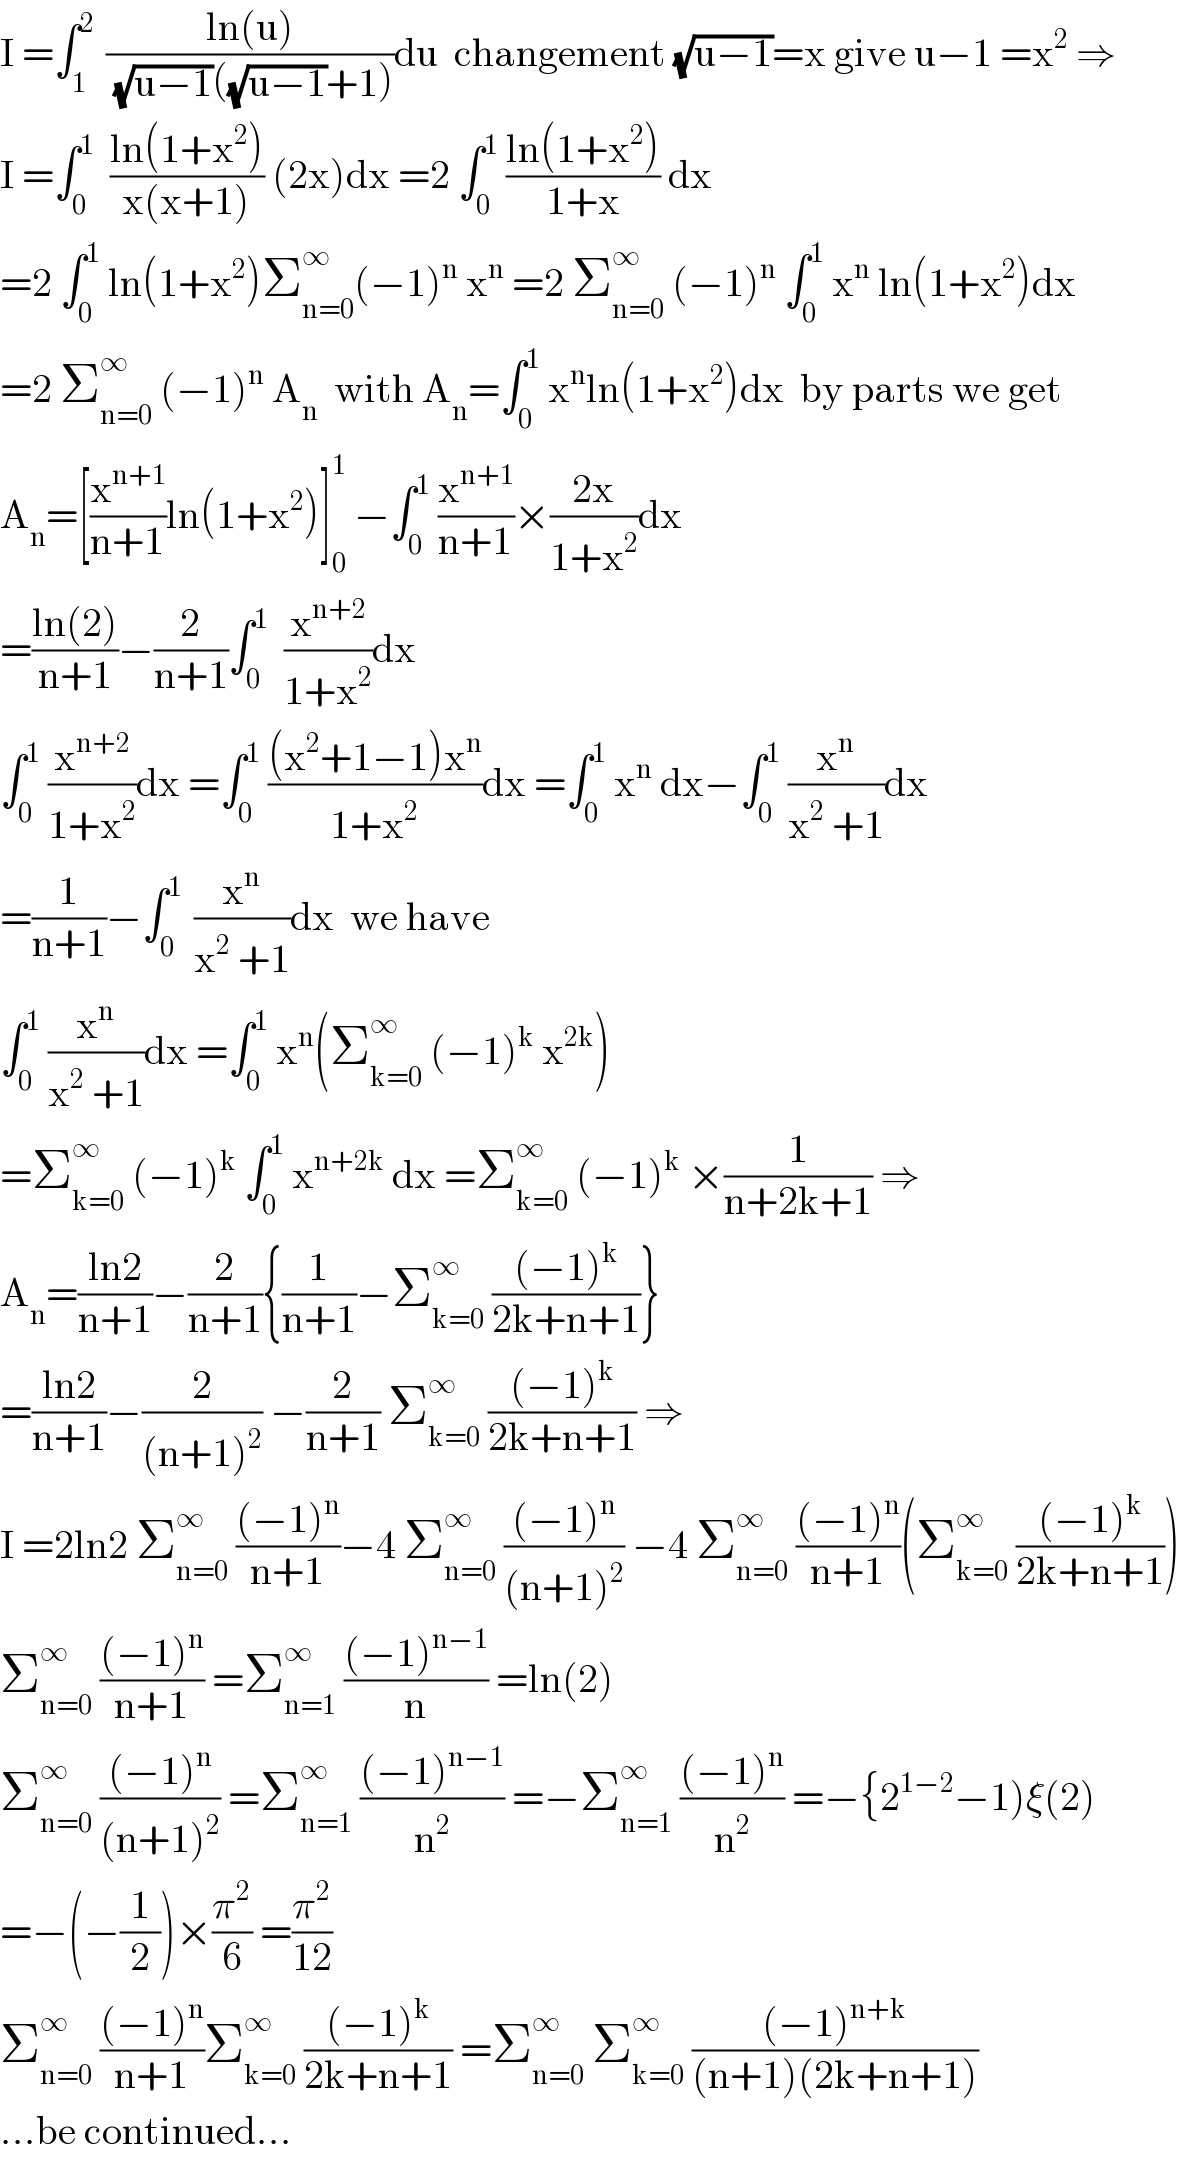 I =∫_1 ^(2 )  ((ln(u))/((√(u−1))((√(u−1))+1)))du  changement (√(u−1))=x give u−1 =x^2  ⇒  I =∫_0 ^1   ((ln(1+x^2 ))/(x(x+1))) (2x)dx =2 ∫_0 ^1  ((ln(1+x^2 ))/(1+x)) dx  =2 ∫_0 ^1  ln(1+x^2 )Σ_(n=0) ^∞ (−1)^n  x^n  =2 Σ_(n=0) ^∞  (−1)^n  ∫_0 ^1  x^n  ln(1+x^2 )dx  =2 Σ_(n=0) ^∞  (−1)^n  A_n   with A_n =∫_0 ^1  x^n ln(1+x^2 )dx  by parts we get  A_n =[(x^(n+1) /(n+1))ln(1+x^2 )]_0 ^1  −∫_0 ^1  (x^(n+1) /(n+1))×((2x)/(1+x^2 ))dx  =((ln(2))/(n+1))−(2/(n+1))∫_0 ^1   (x^(n+2) /(1+x^2 ))dx   ∫_0 ^1  (x^(n+2) /(1+x^2 ))dx =∫_0 ^1  (((x^2 +1−1)x^n )/(1+x^2 ))dx =∫_0 ^1  x^n  dx−∫_0 ^1  (x^n /(x^2  +1))dx  =(1/(n+1))−∫_0 ^(1 )  (x^n /(x^2  +1))dx  we have  ∫_0 ^1  (x^n /(x^2  +1))dx =∫_0 ^1  x^n (Σ_(k=0) ^∞  (−1)^k  x^(2k) )  =Σ_(k=0) ^∞  (−1)^k  ∫_0 ^1  x^(n+2k)  dx =Σ_(k=0) ^∞  (−1)^k  ×(1/(n+2k+1)) ⇒  A_n =((ln2)/(n+1))−(2/(n+1)){(1/(n+1))−Σ_(k=0) ^∞  (((−1)^k )/(2k+n+1))}  =((ln2)/(n+1))−(2/((n+1)^2 )) −(2/(n+1)) Σ_(k=0) ^∞  (((−1)^k )/(2k+n+1)) ⇒  I =2ln2 Σ_(n=0) ^∞  (((−1)^n )/(n+1))−4 Σ_(n=0) ^∞  (((−1)^n )/((n+1)^2 )) −4 Σ_(n=0) ^∞  (((−1)^n )/(n+1))(Σ_(k=0) ^∞  (((−1)^k )/(2k+n+1)))  Σ_(n=0) ^∞  (((−1)^n )/(n+1)) =Σ_(n=1) ^∞  (((−1)^(n−1) )/n) =ln(2)  Σ_(n=0) ^∞  (((−1)^n )/((n+1)^2 )) =Σ_(n=1) ^∞  (((−1)^(n−1) )/n^2 ) =−Σ_(n=1) ^∞  (((−1)^n )/n^2 ) =−{2^(1−2) −1)ξ(2)  =−(−(1/2))×(π^2 /6) =(π^2 /(12))  Σ_(n=0) ^∞  (((−1)^n )/(n+1))Σ_(k=0) ^∞  (((−1)^k )/(2k+n+1)) =Σ_(n=0) ^∞  Σ_(k=0) ^∞  (((−1)^(n+k) )/((n+1)(2k+n+1)))  ...be continued...  